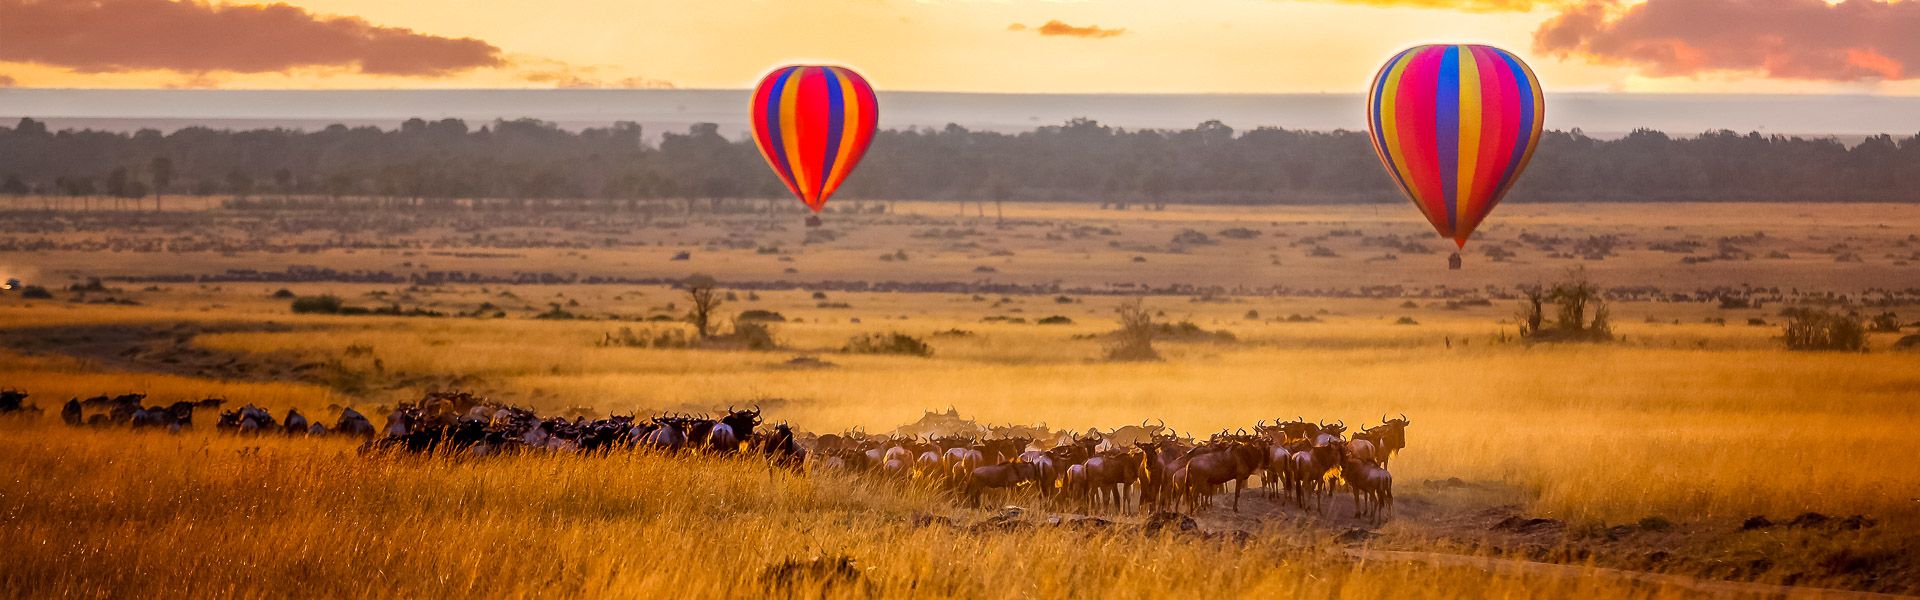 Sonnenaufgang in der Masai Mara mit Ballons und Gnuherde |  Rixipix, iStockphoto.com / Chamleon